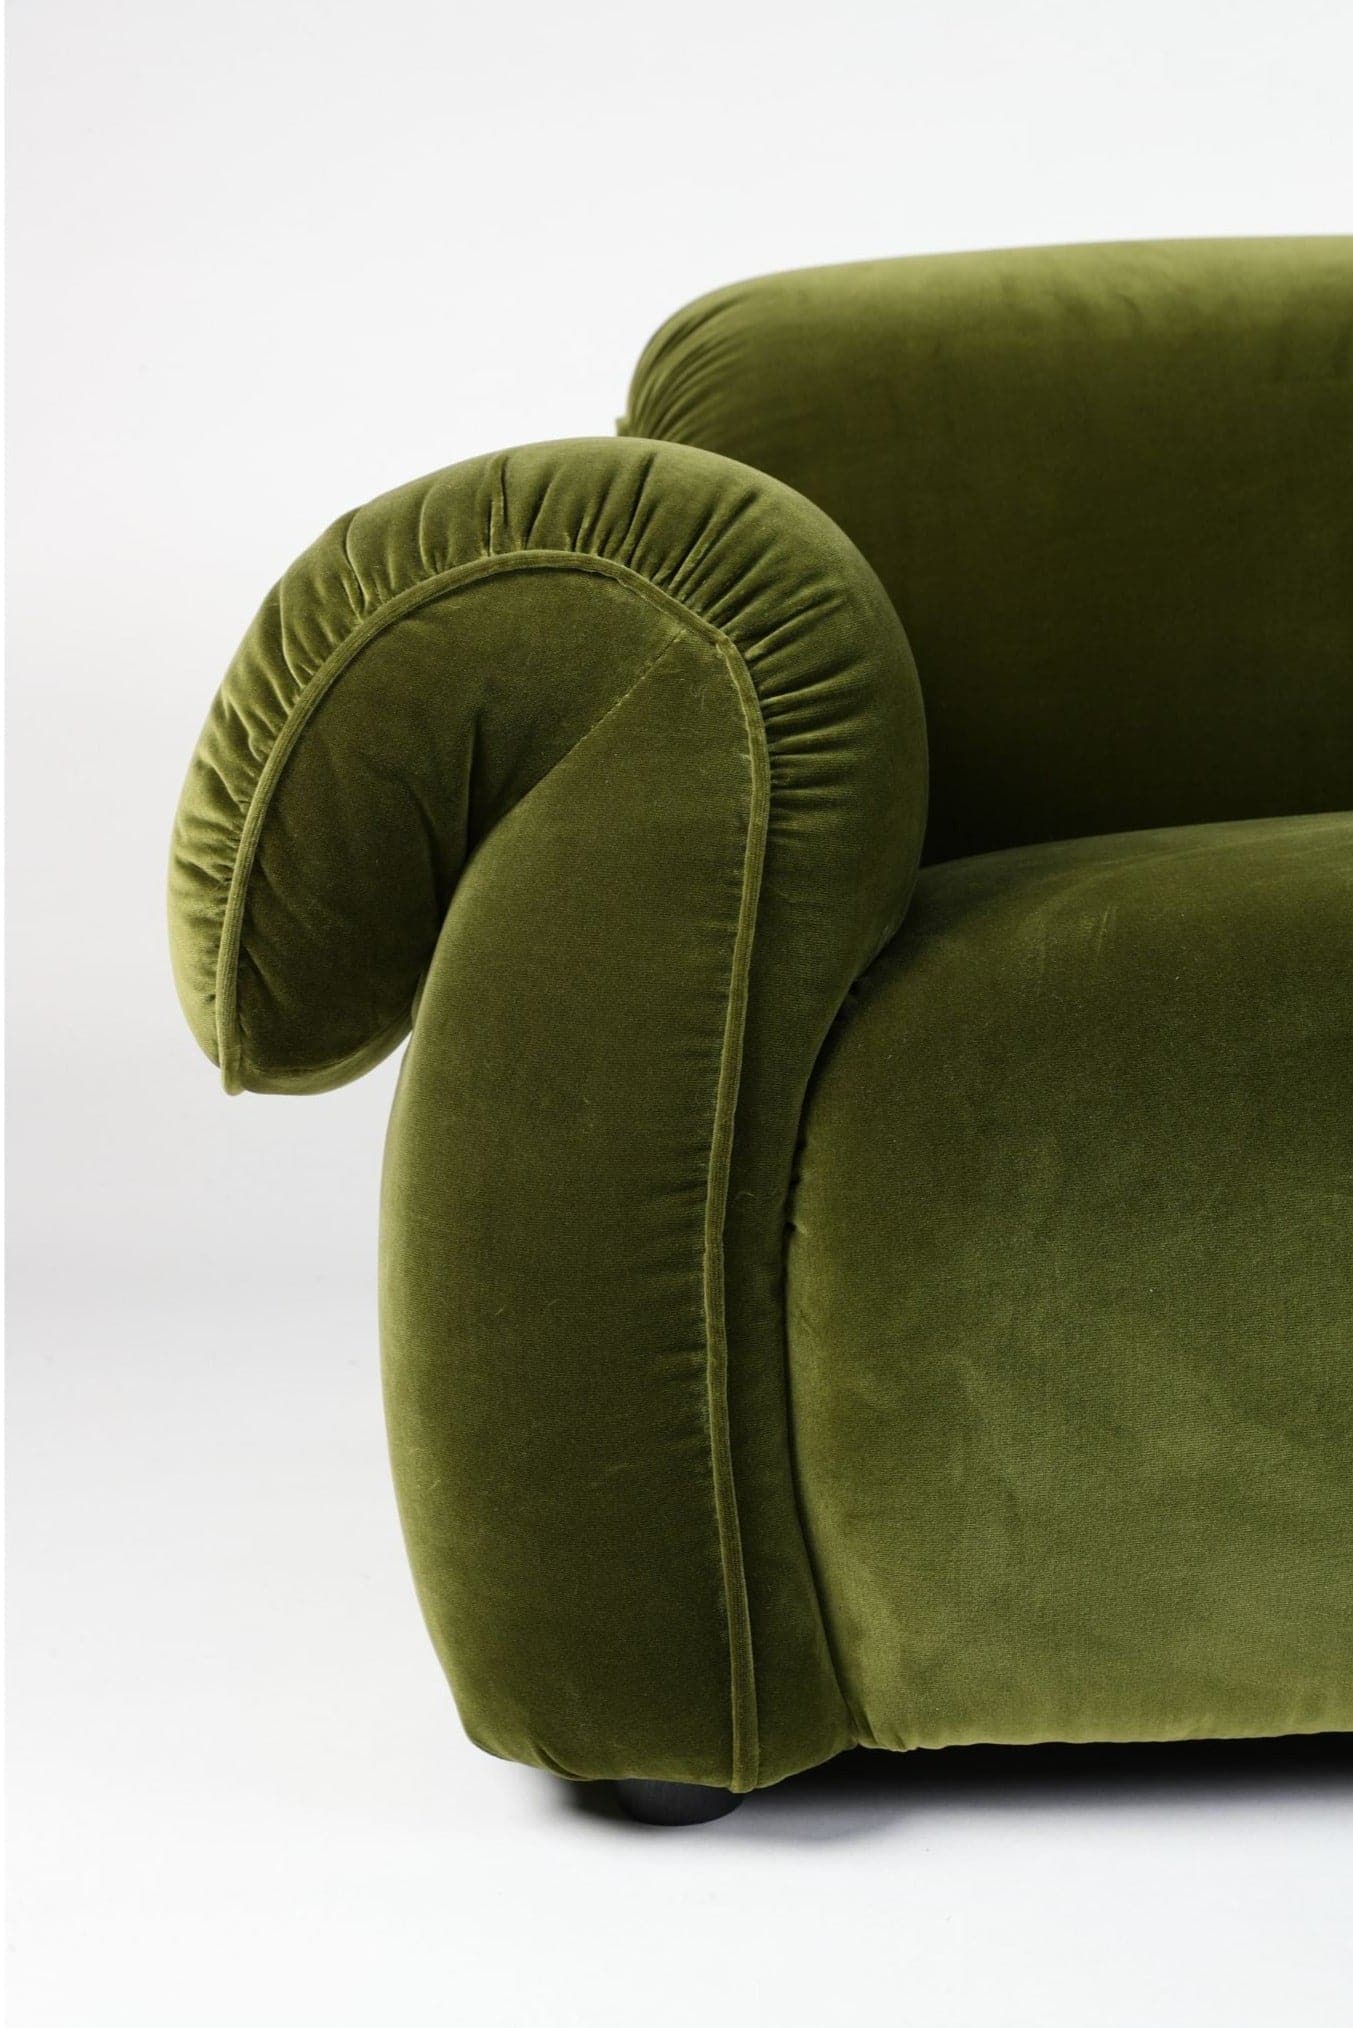 Icon Sofa replica - plush sofa by Michele Menescardi for Natuzzi Italia. 